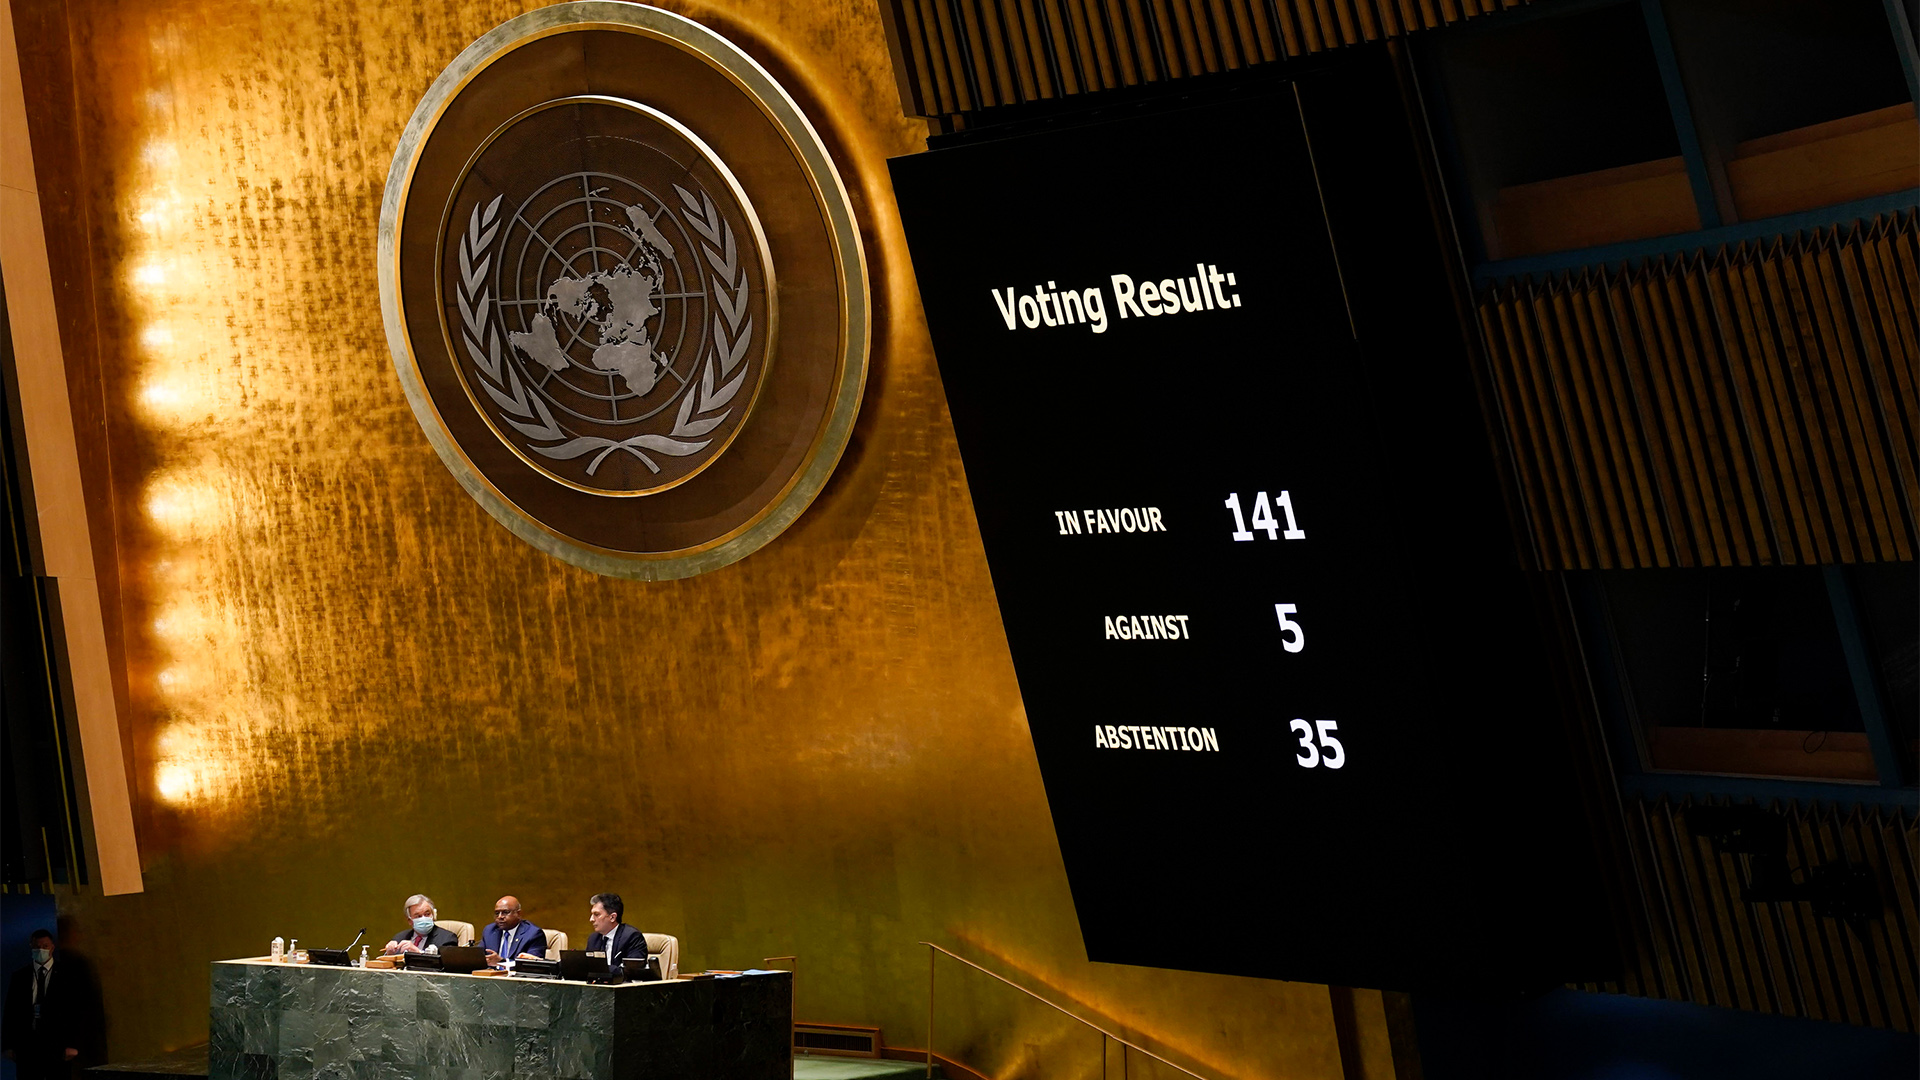 Die Ergebnis der Abstimmung zur Ukraine stehen bei der UN-Vollversammlung an die Wand bei der UN-Vollversammlung projiziert.